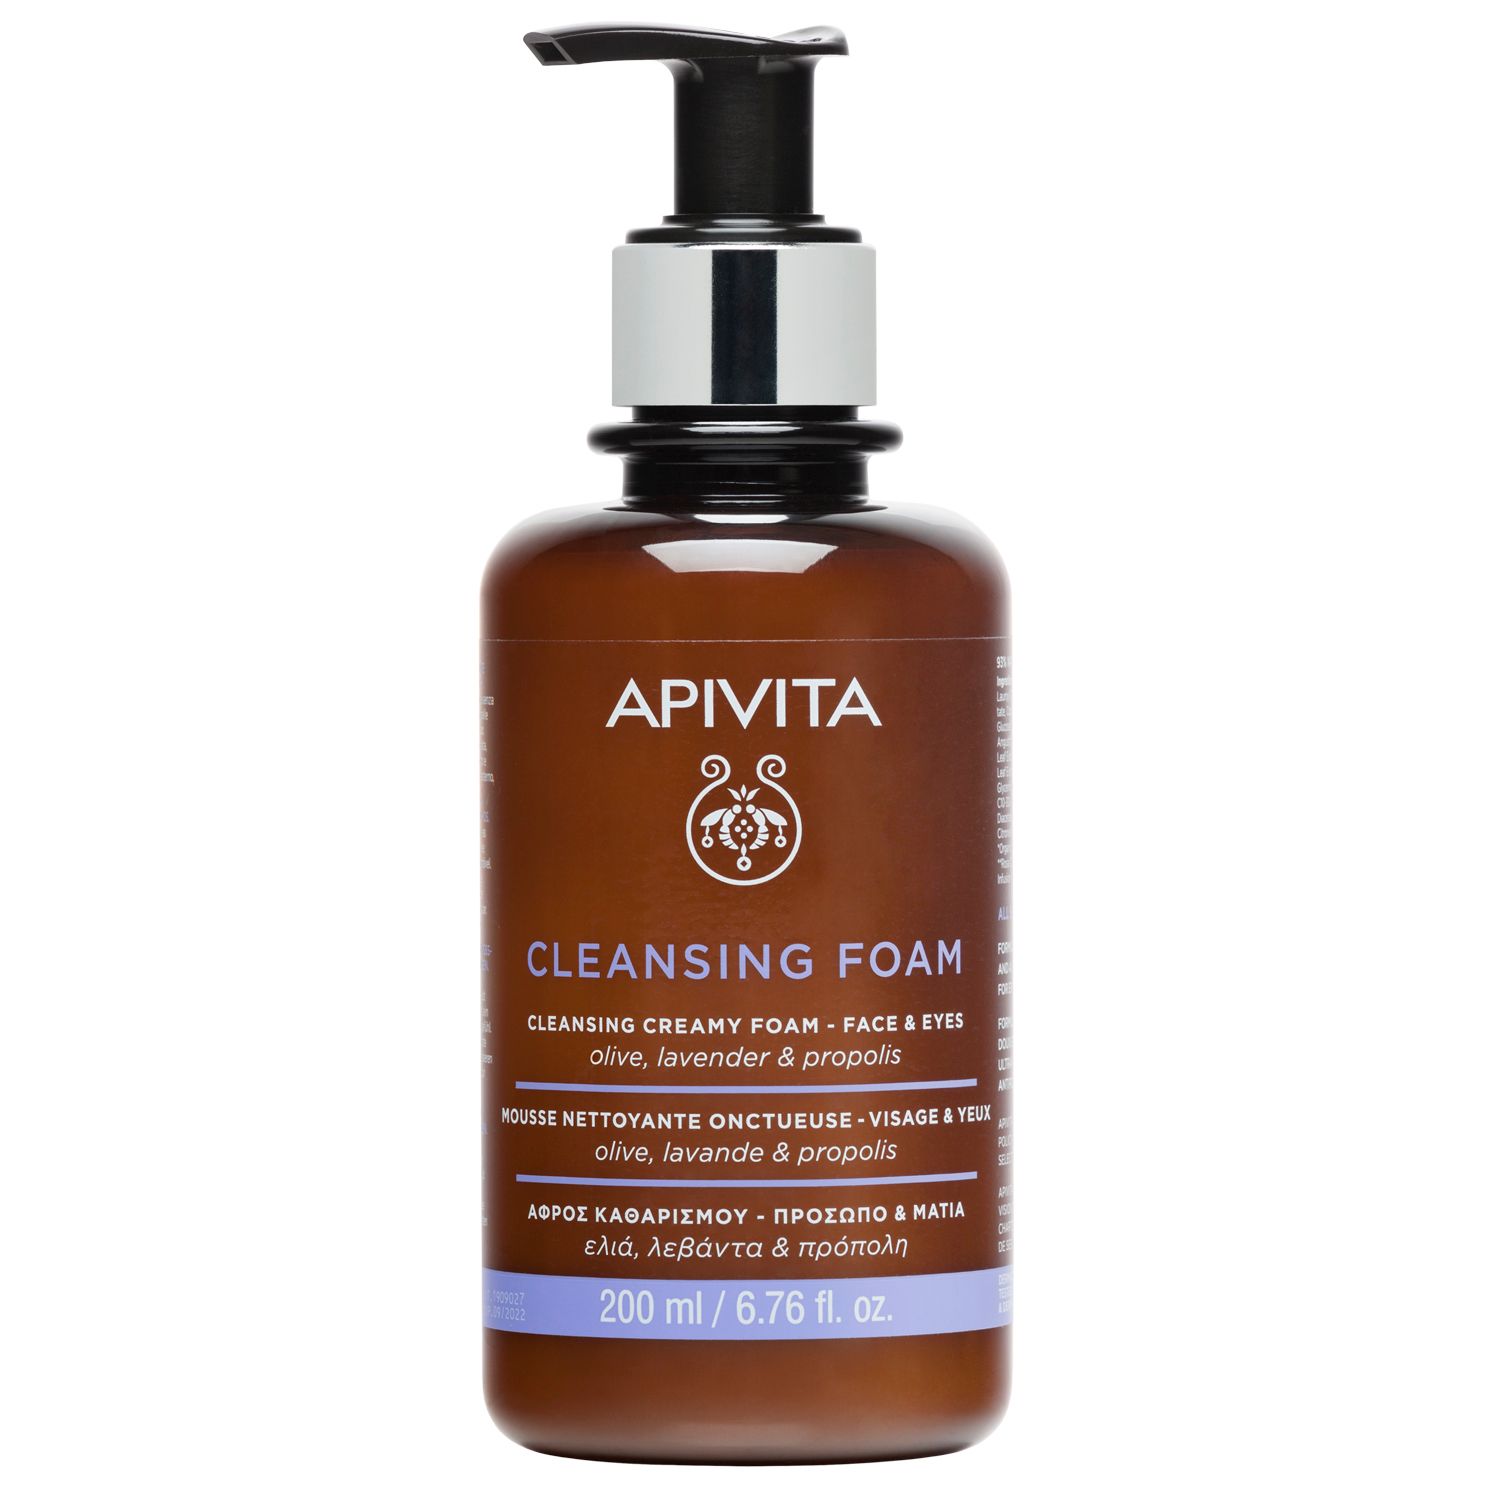 APIVITA SA Apivita Creamy Cleansing Foam - Gesicht und Augen